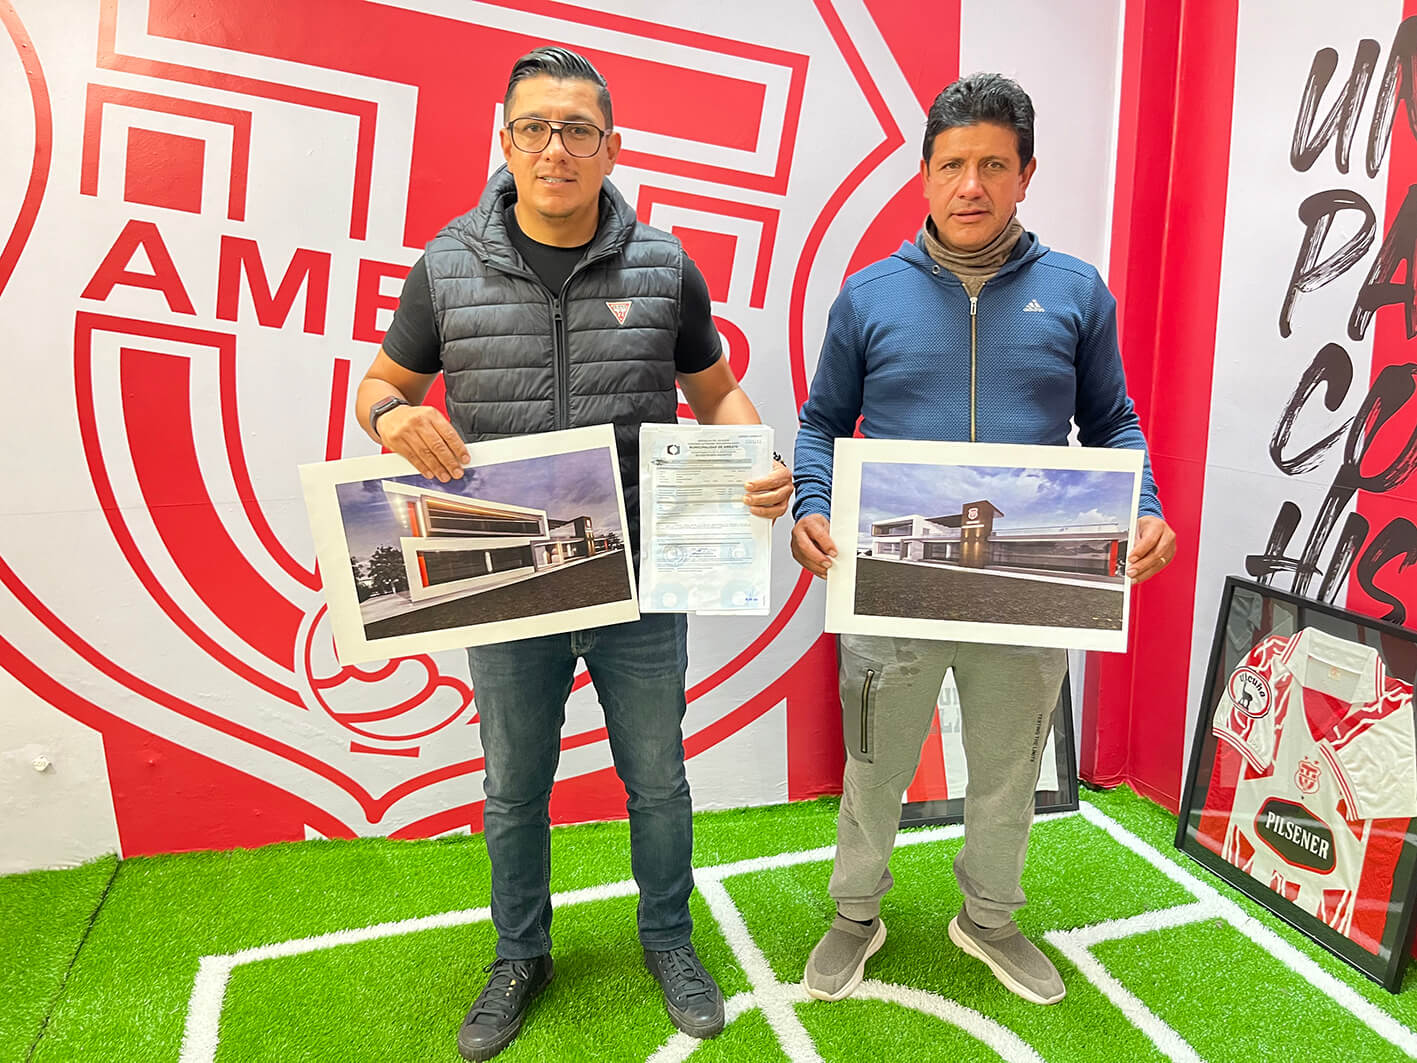 Alberto Jara junto a Robert Gavilánez muestran los planos aprobados por el Municipio de Ambato.  